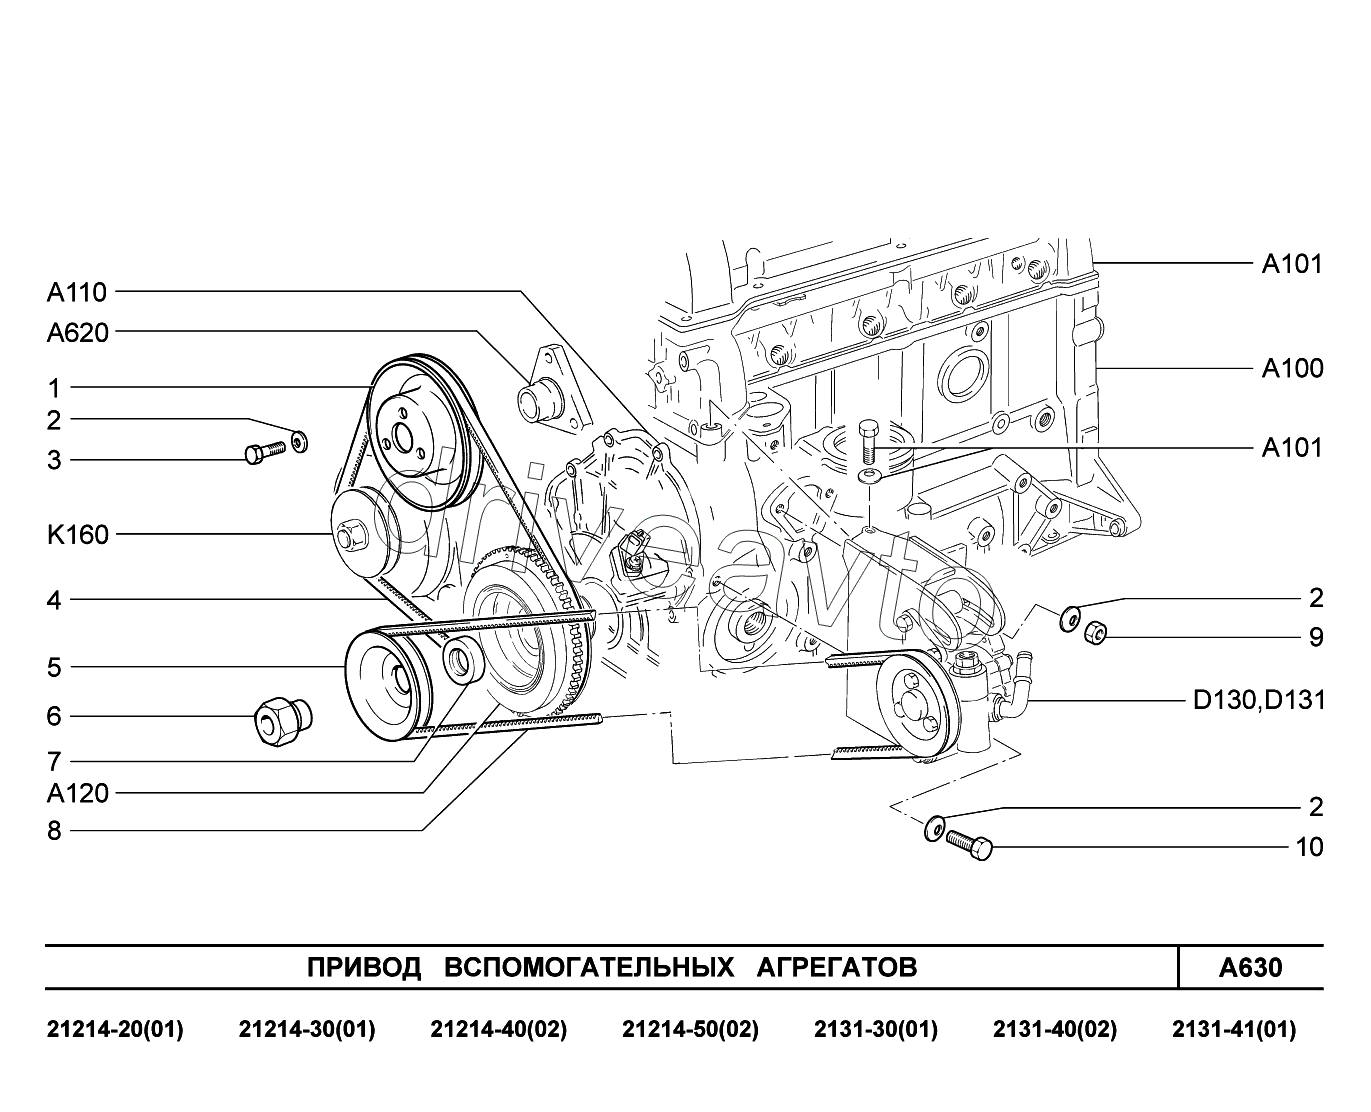 A630. Привод вспомогательных агрегатов